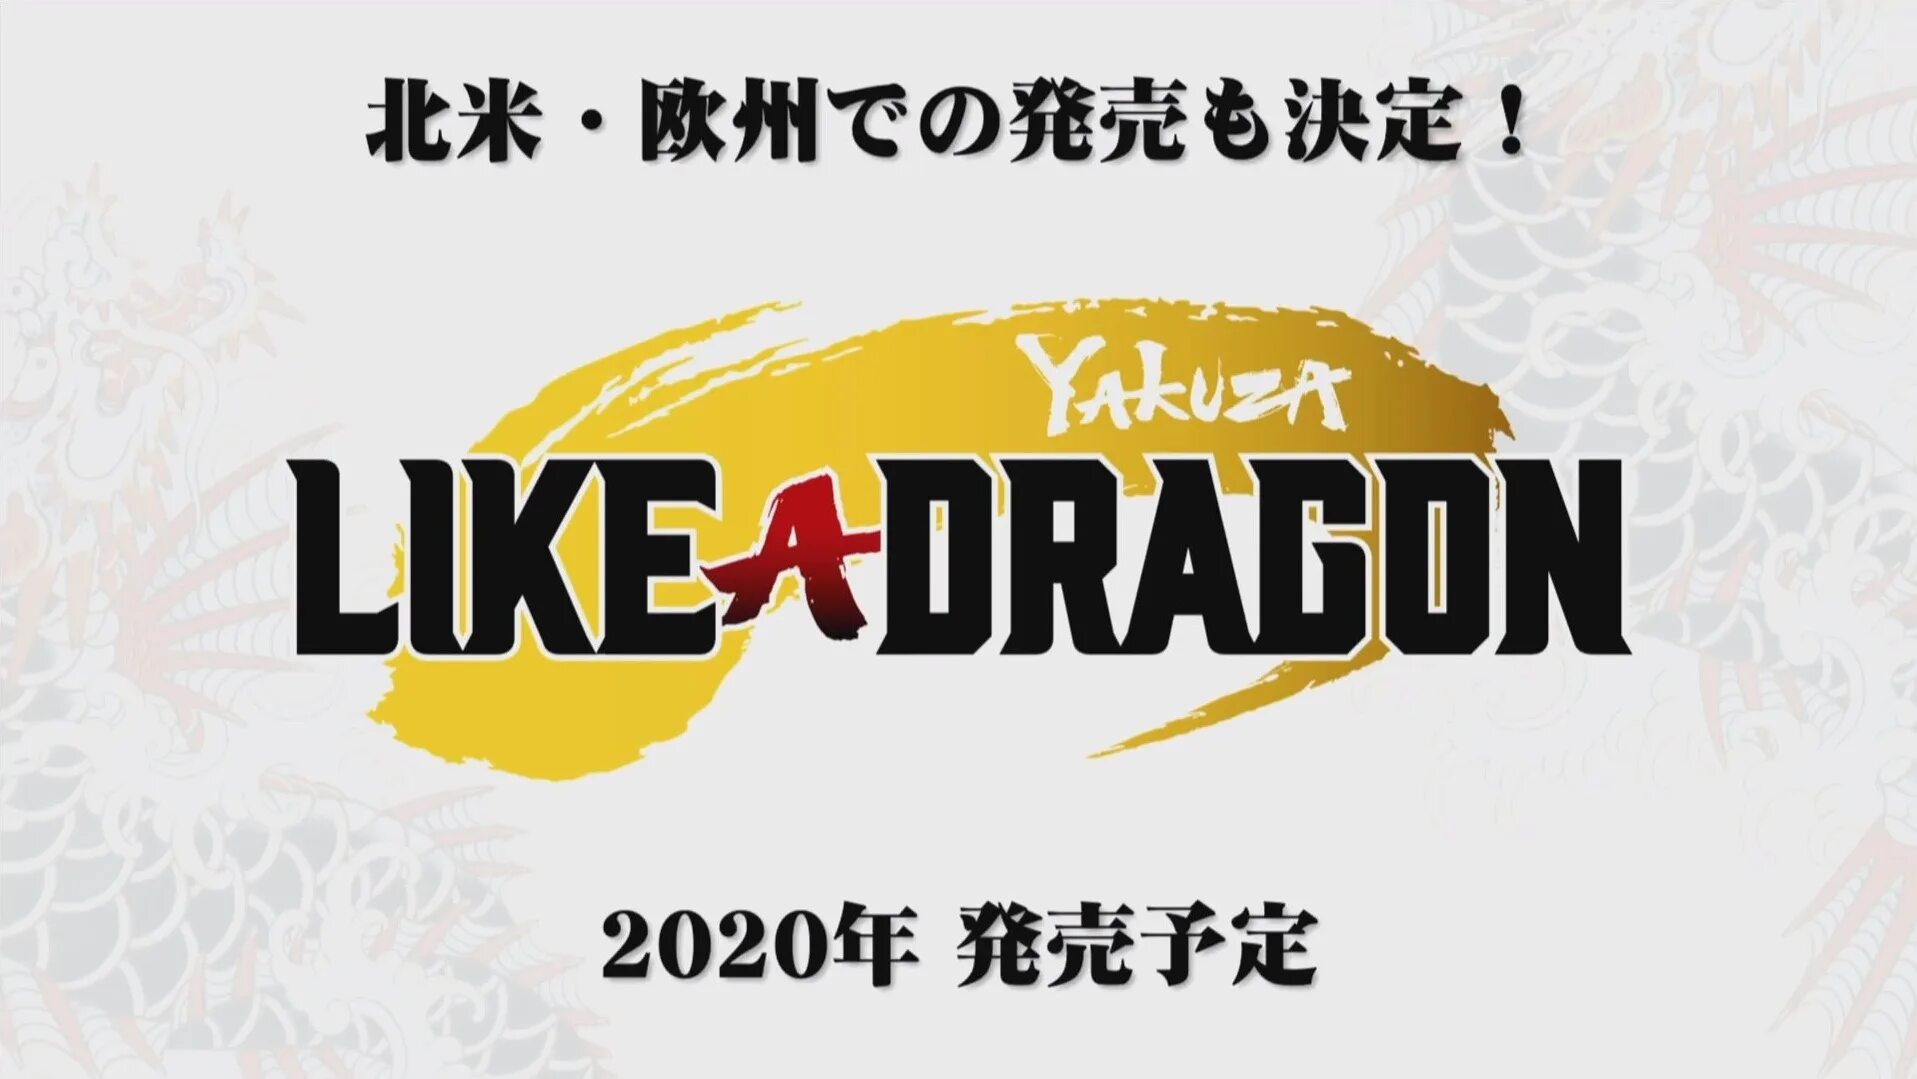 Yakuza like a dragon языки. Yakuza like a Dragon логотип. Yakudza like a Dragon постеры. Yakuza like a Dragon title. Якудза 7.